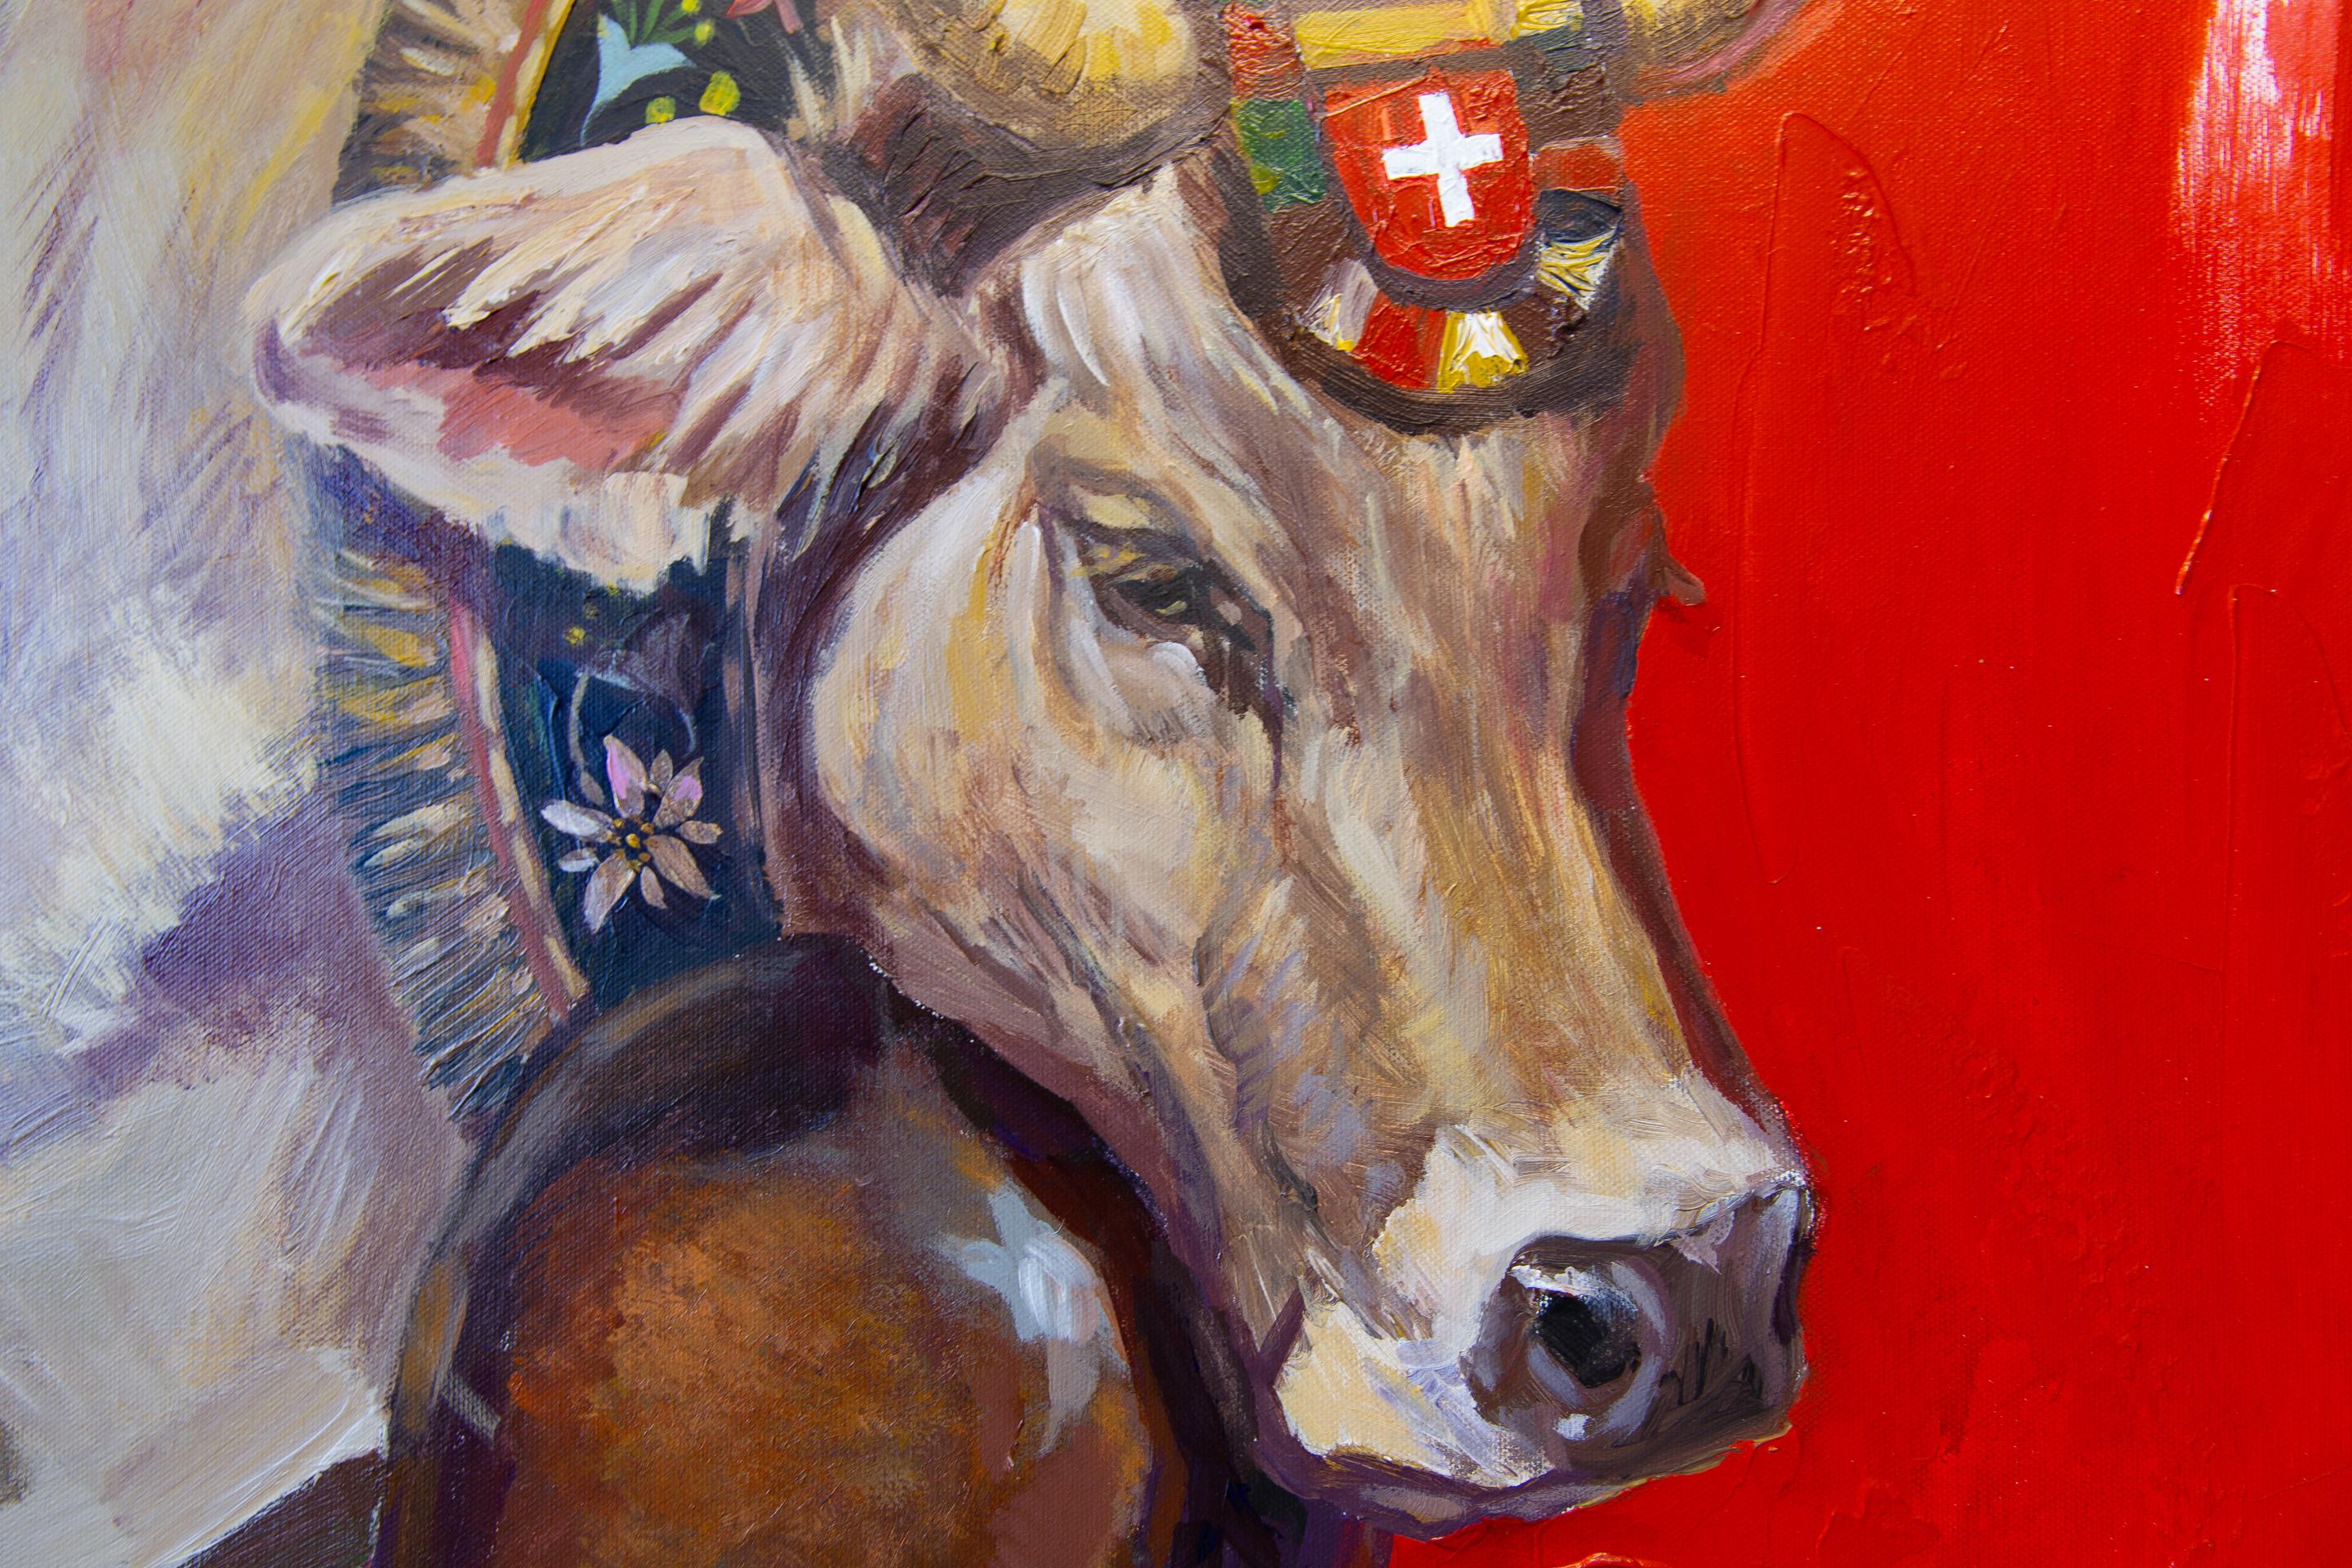 Im Herbst kehren die Schweizer Kühe von den Bergwiesen in die Täler zurück. Sie tragen umgedrehte, mit Blumen geschmückte Melkschemel. Die Kühe laufen in freundlichen Reihen und läuten ihre Glocken. Dies ist ein unbeschreibliches Schauspiel, das